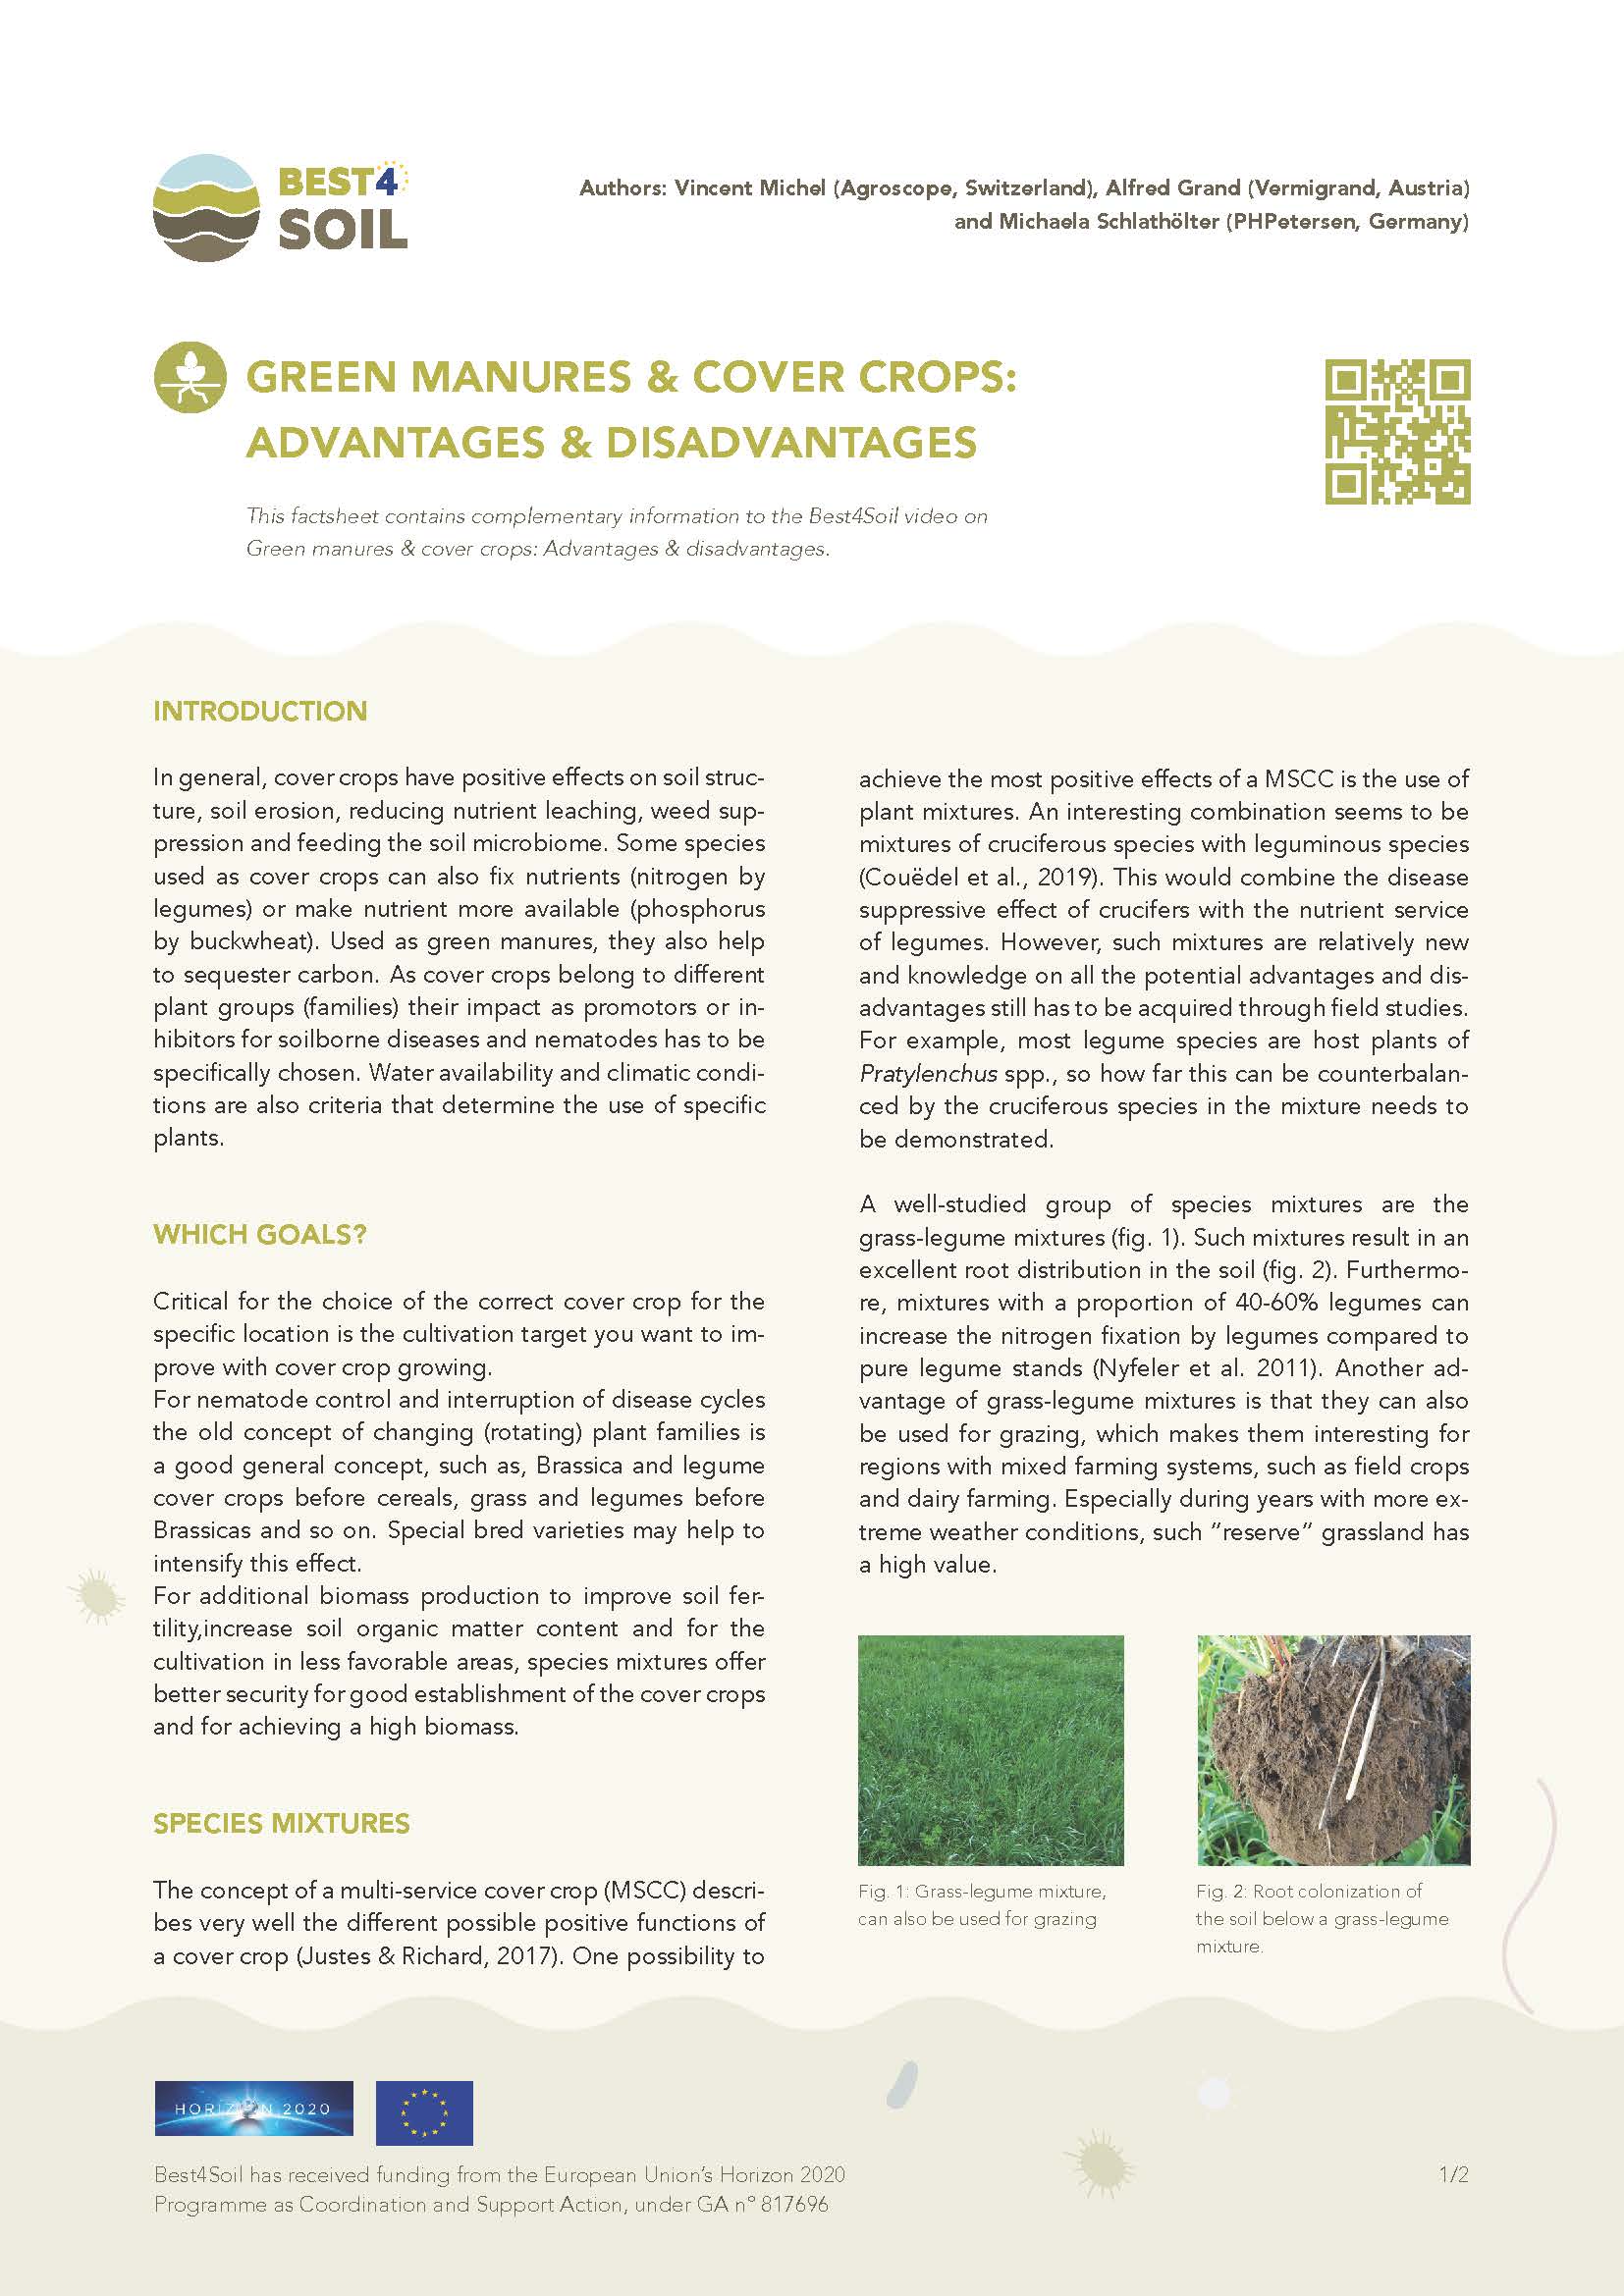 Abonos verdes y cultivos de cobertura: ventajas y desventajas (ficha informativa de Best4Soil)